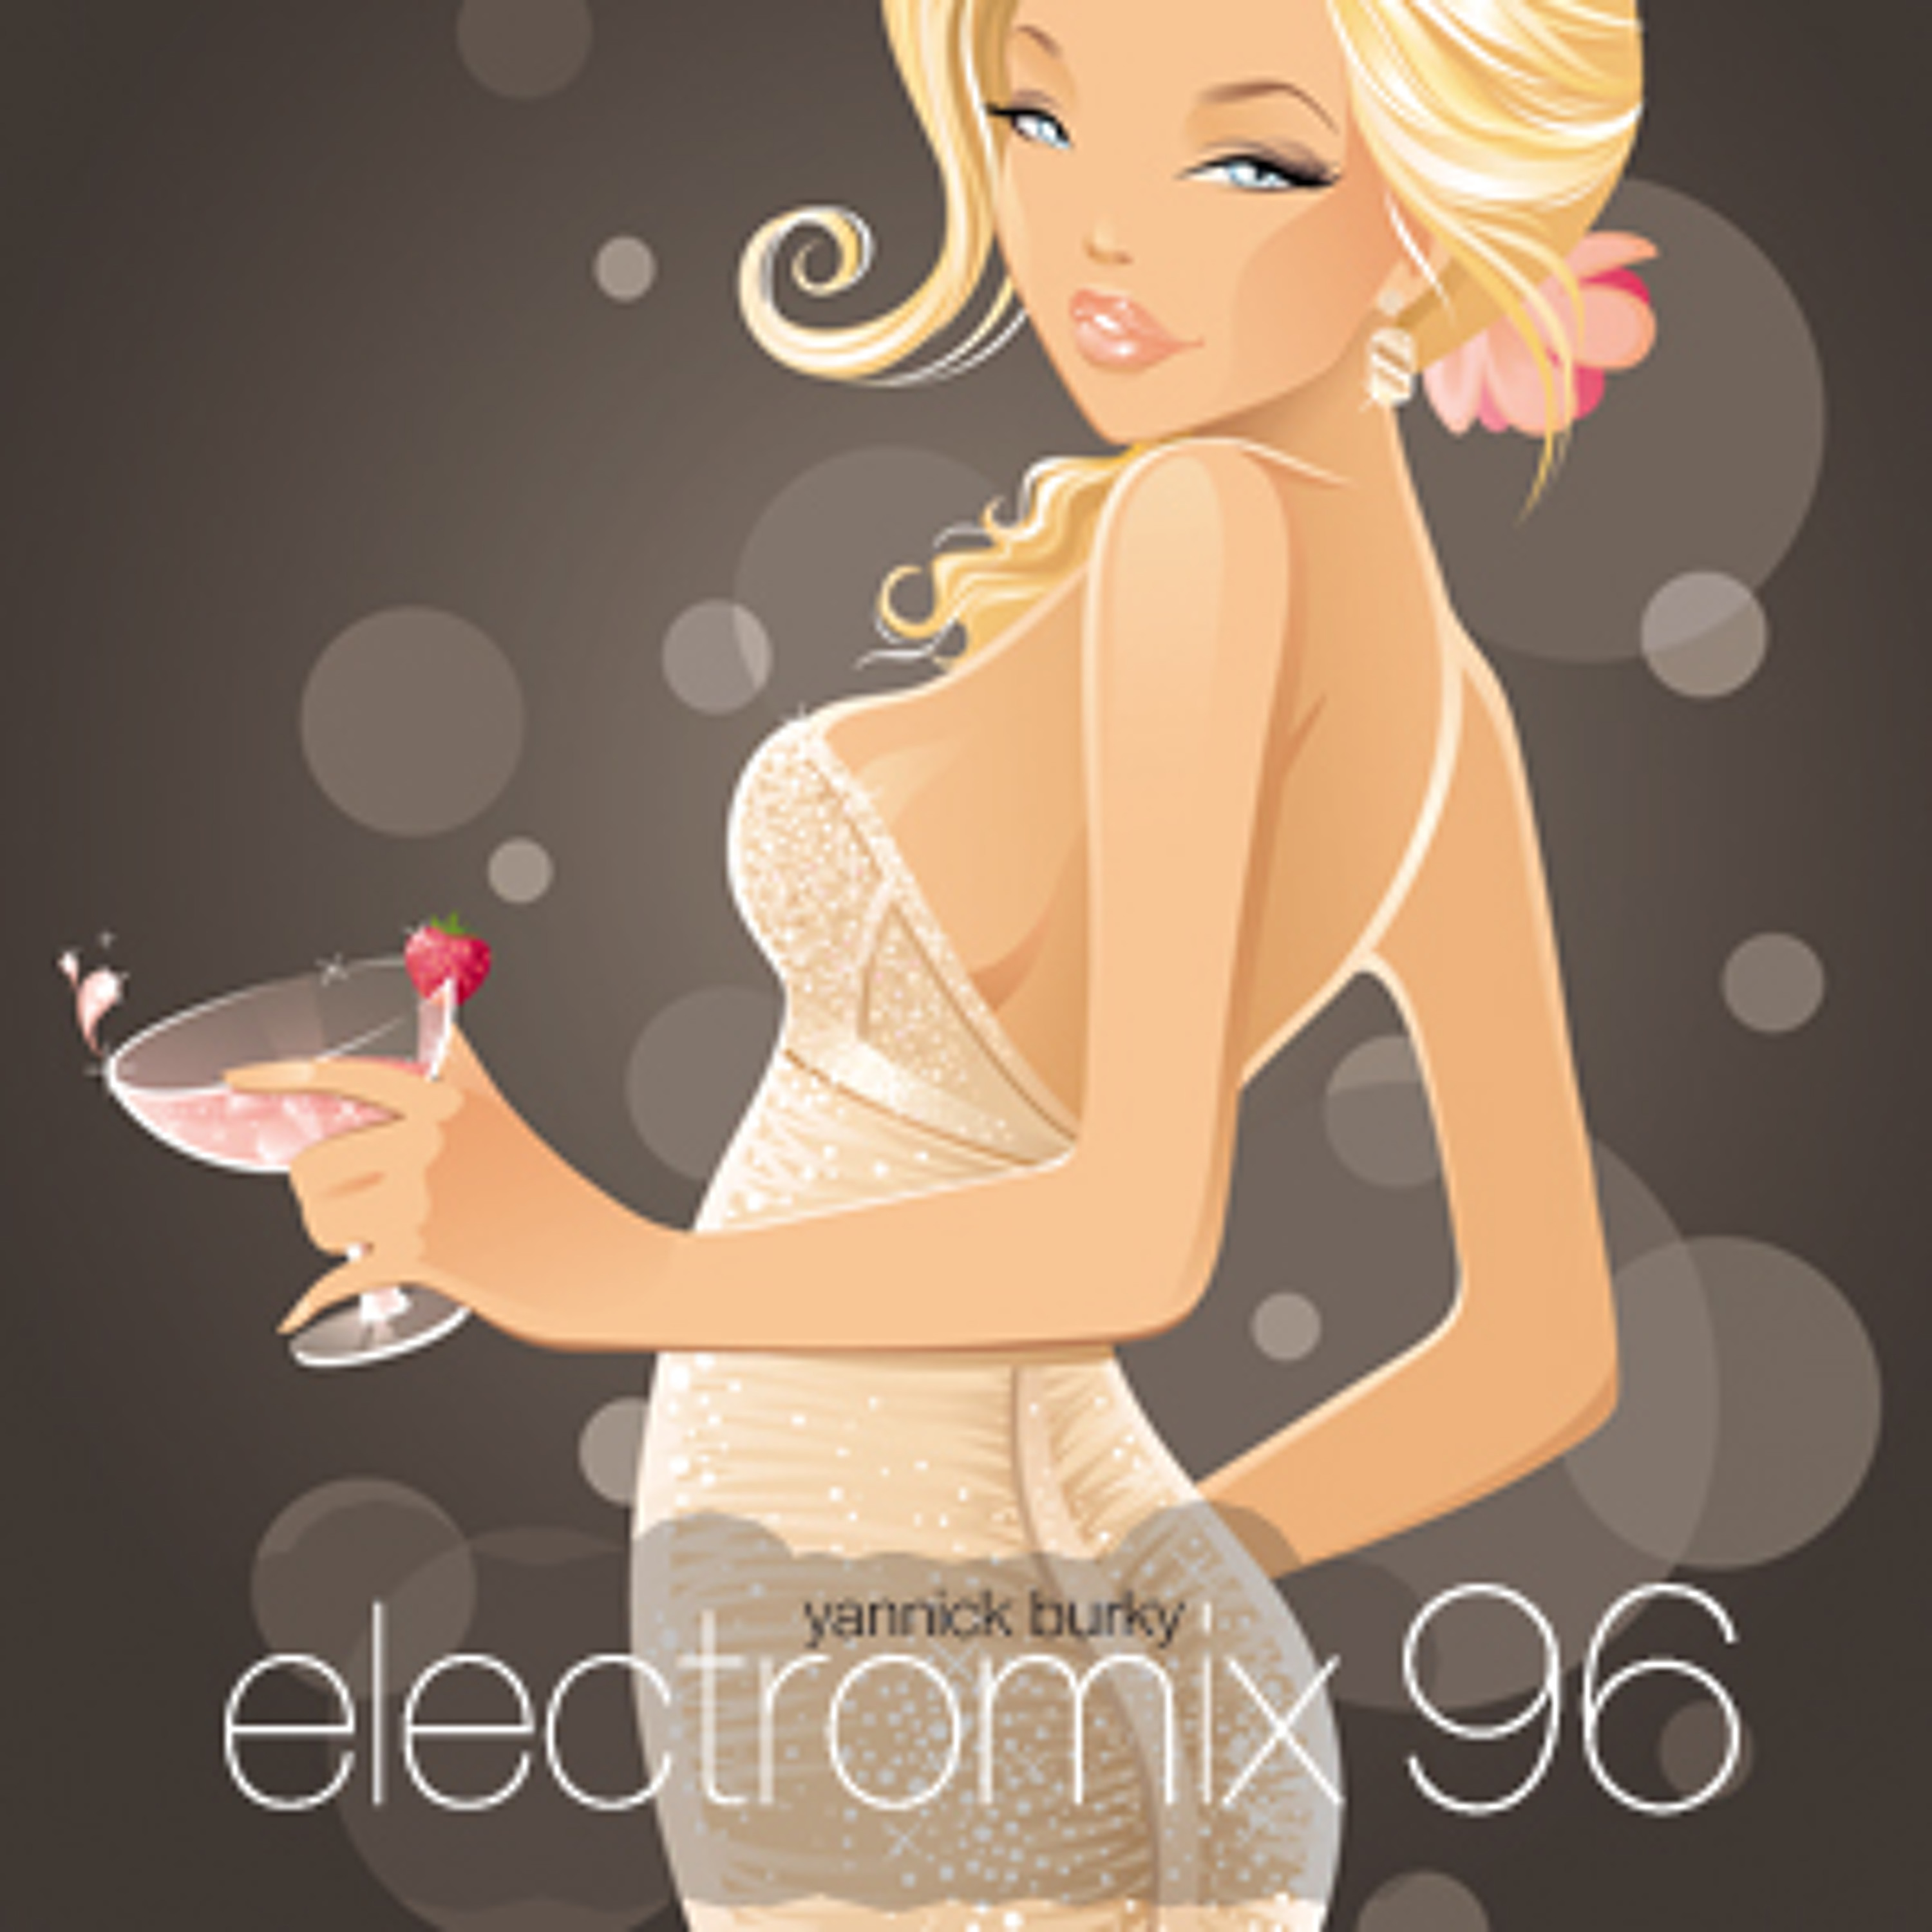 electromix 96 • EDM